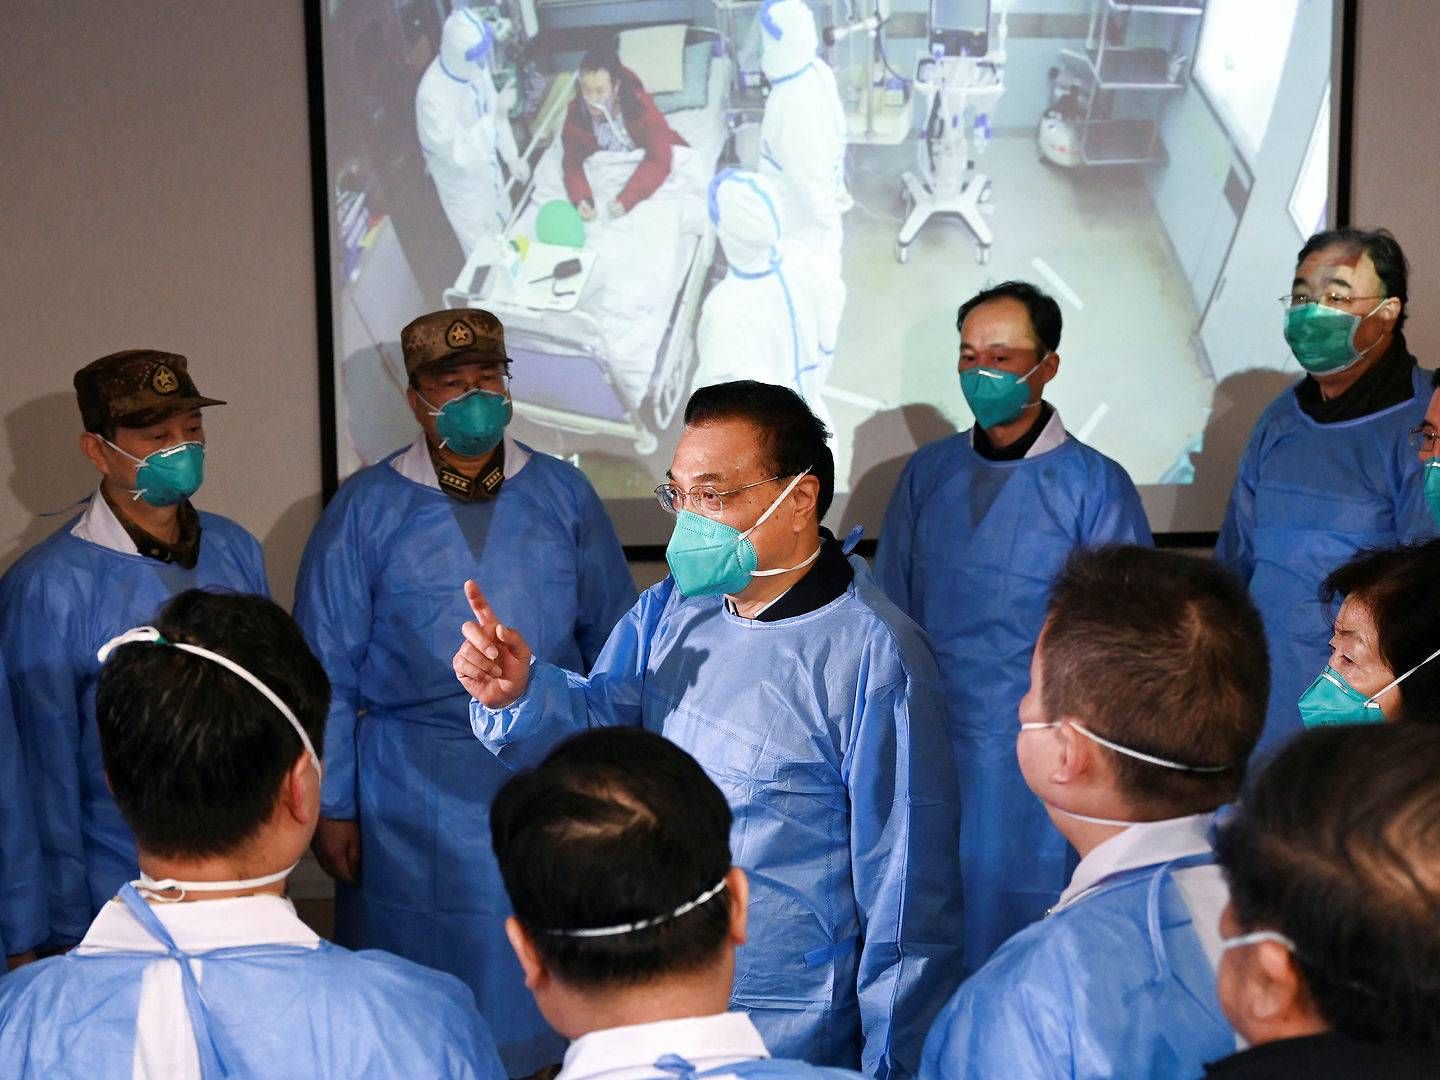 Kinas premierminister Li Keqiang var mandag på besøg på Jinyintan-hospitalet i Wuhan og talte i den forbindelse med hospitalets sundhedspersonale. | Foto: Stringer / Reuters / Ritzau Scanpix